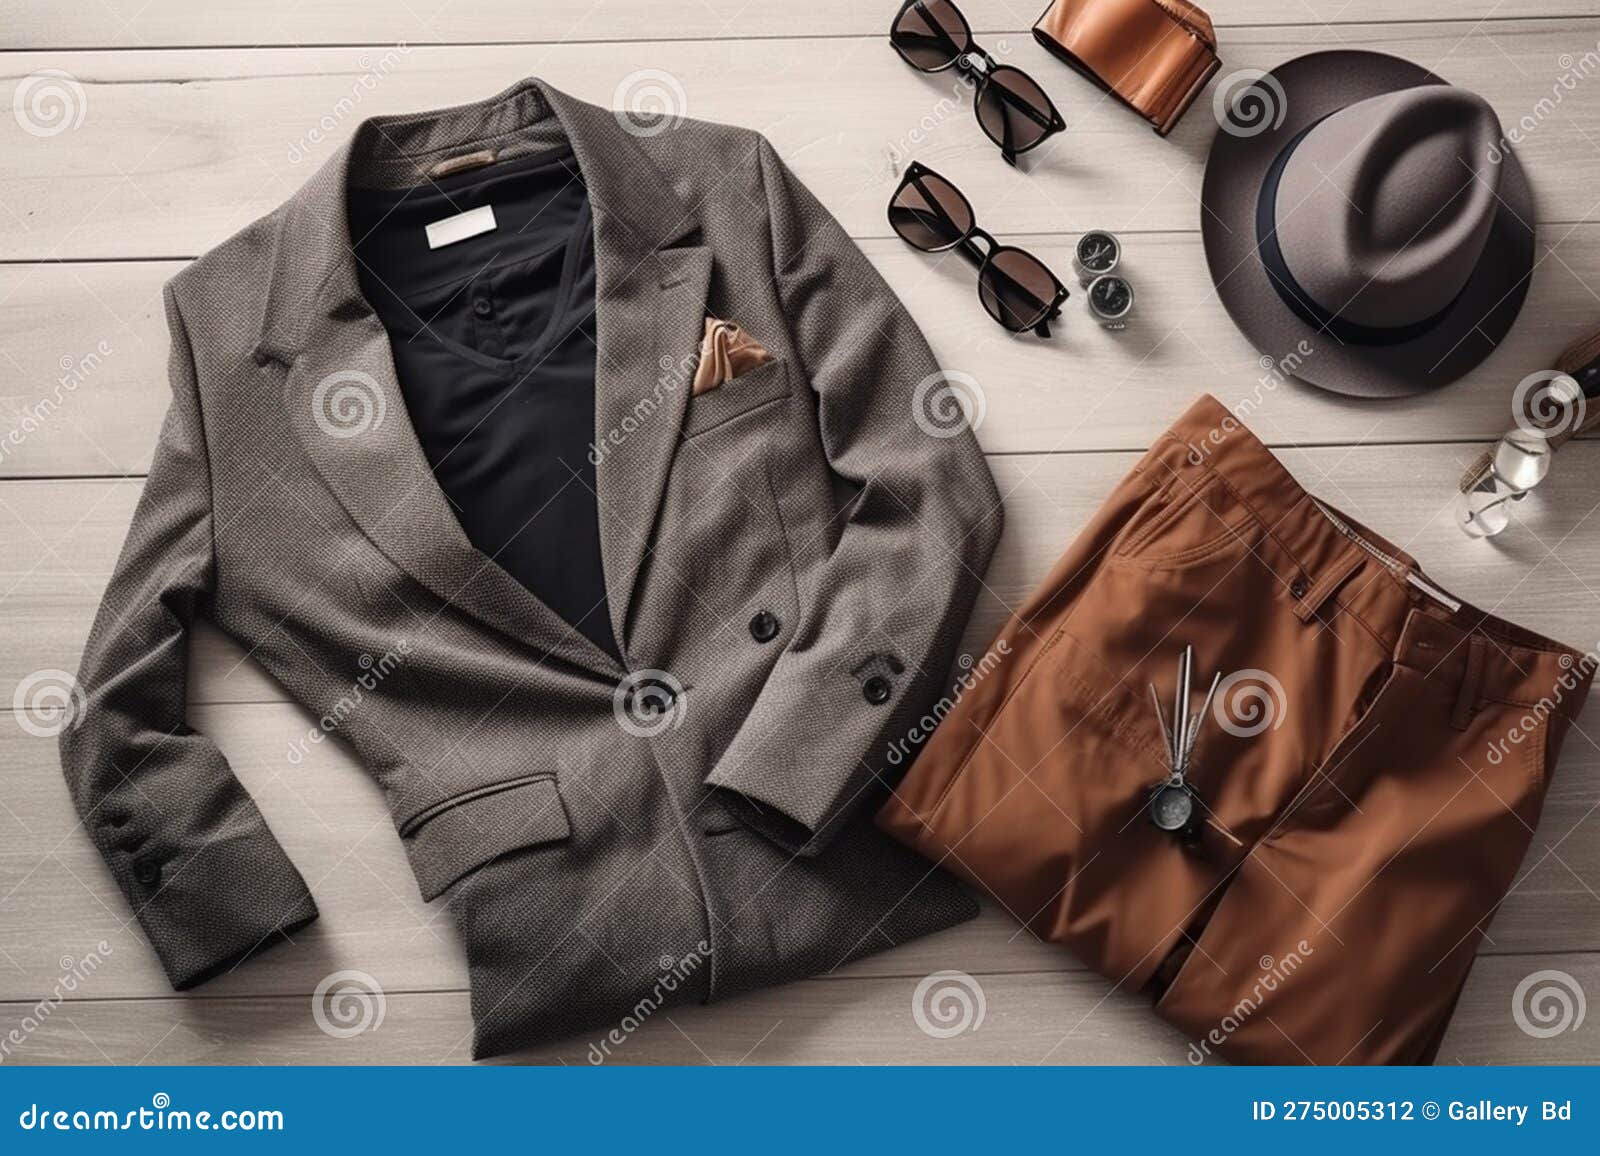 https://thumbs.dreamstime.com/z/foto-estilosa-significa-roupas-casuais-de-moda-vestidos-homens-cal%C3%A7ados-jeans-smartphone-wallet-bag-outfit-em-fundo-madeira-275005312.jpg